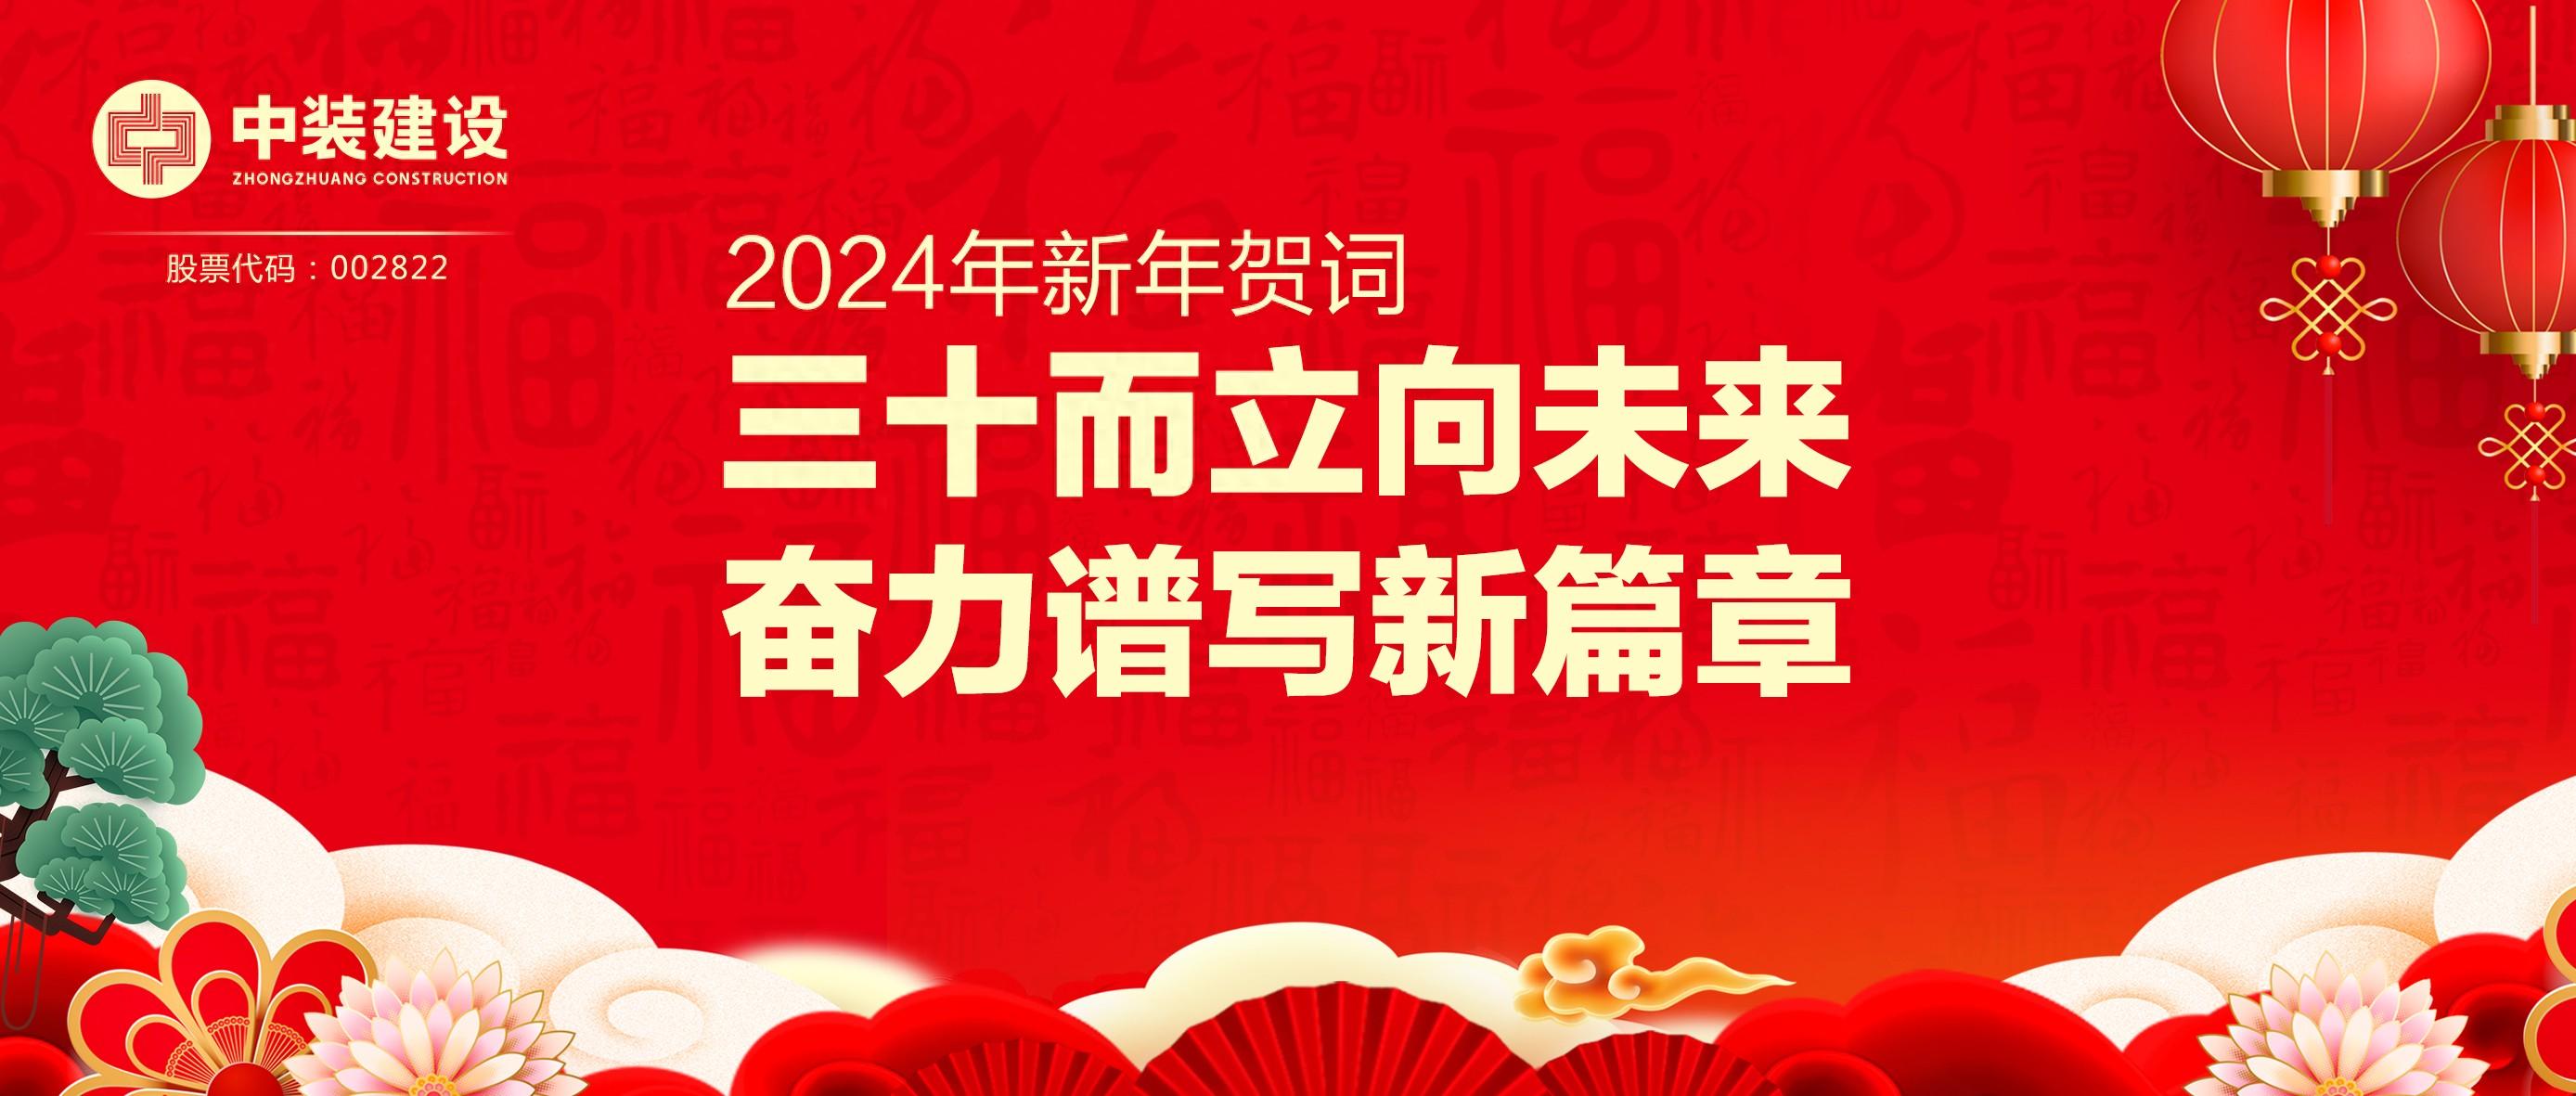 腾博游戏官网888手机版总裁2024年新年贺词 | 三十而立向未来 奋力谱写新篇章